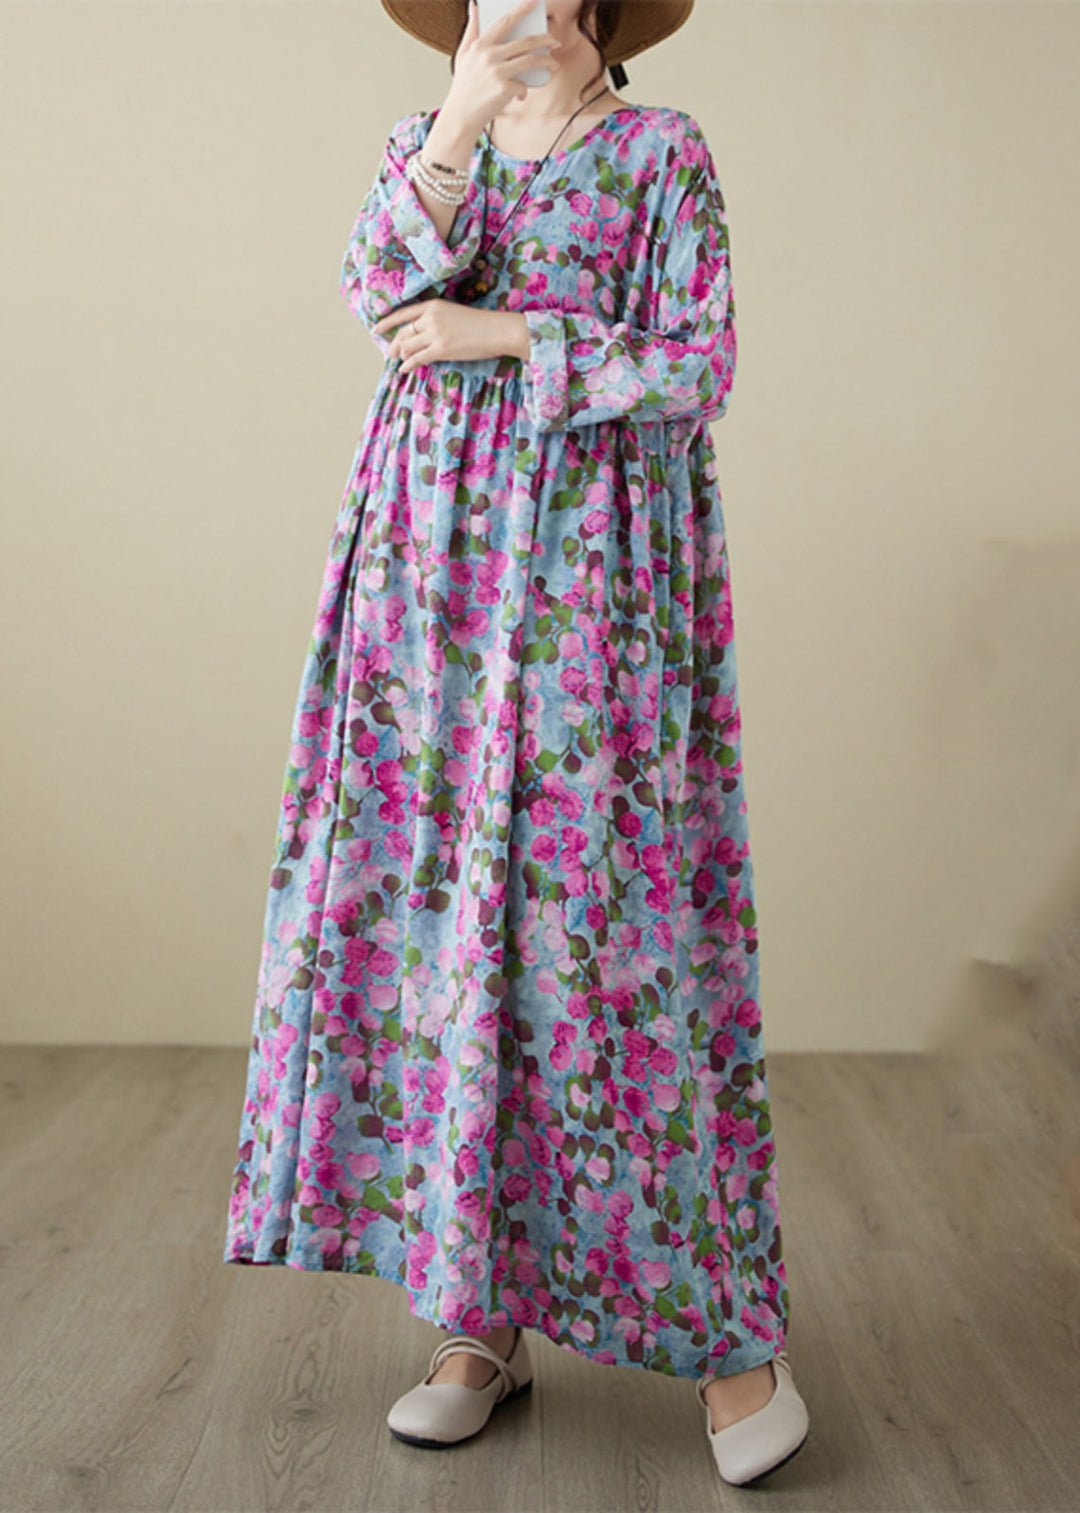 Handmade Rose O-Neck Print Wrinkled Long Dresses Spring